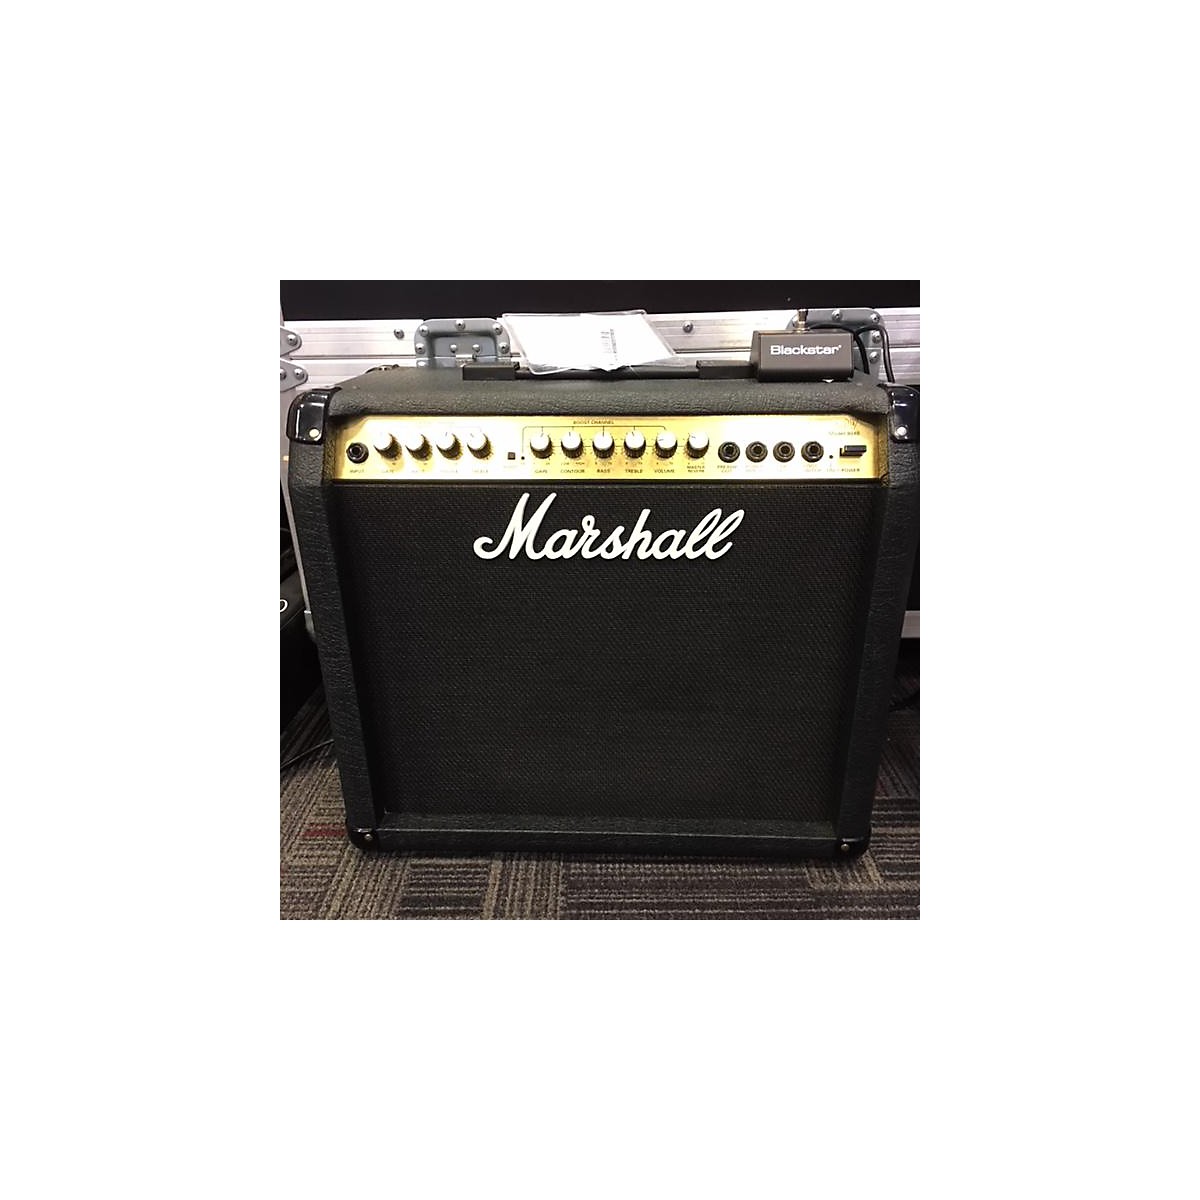 Used Marshall Valvestate 40v Model 8040 Guitar Combo Amp | Guitar Center